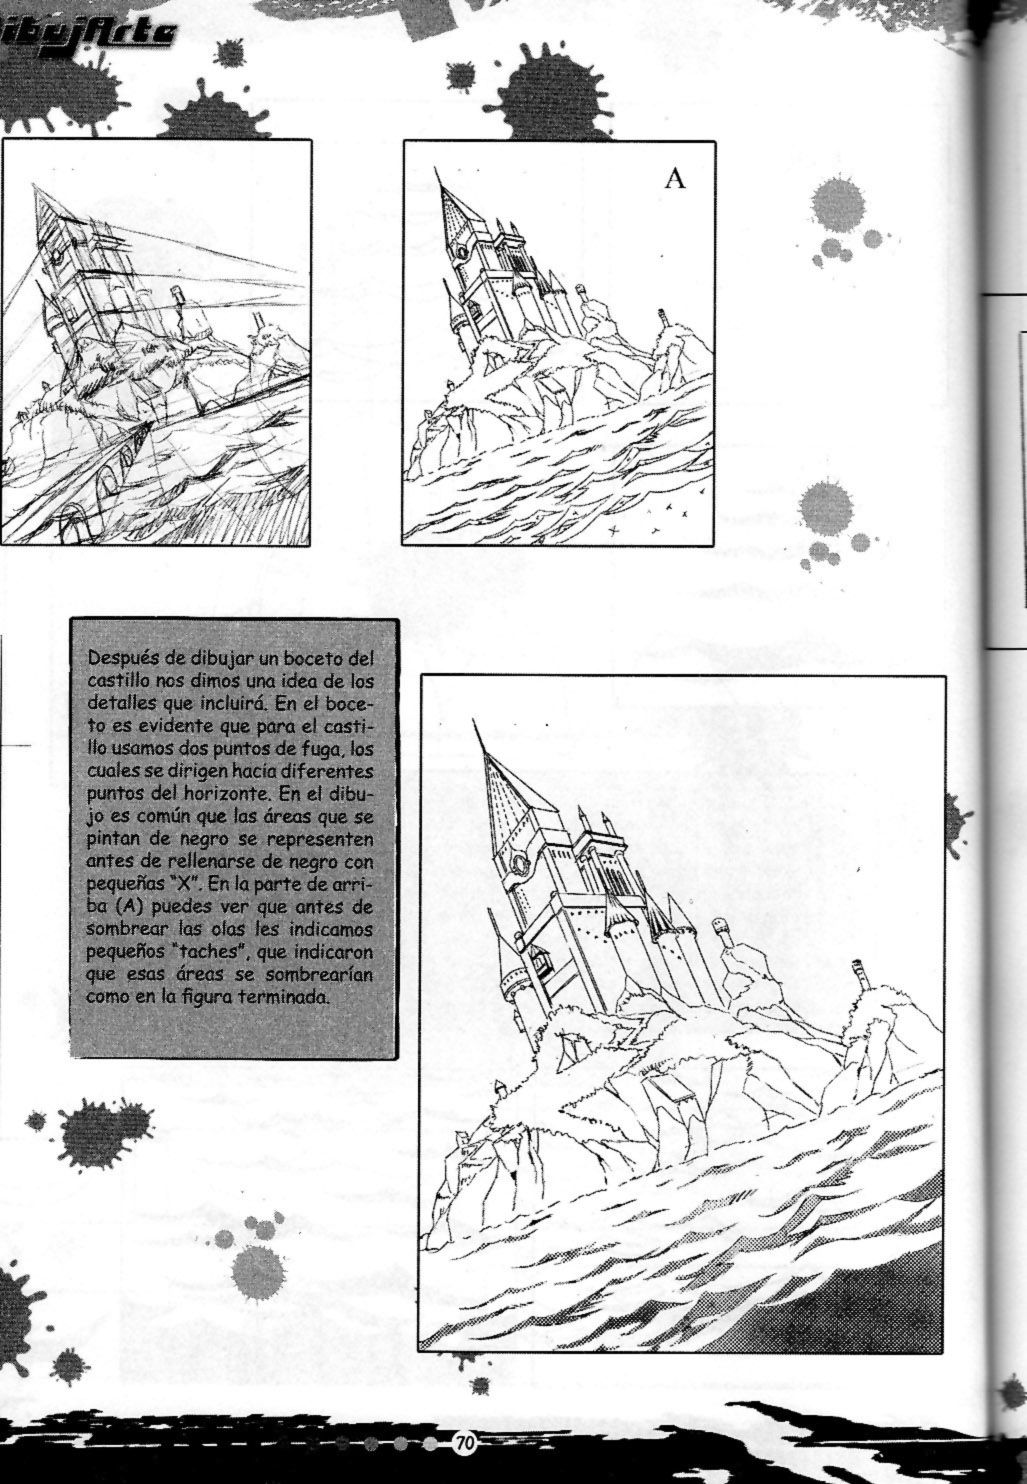 DibujArte Epecial Manga #15/20 - Especial fondos [Spanish] 69